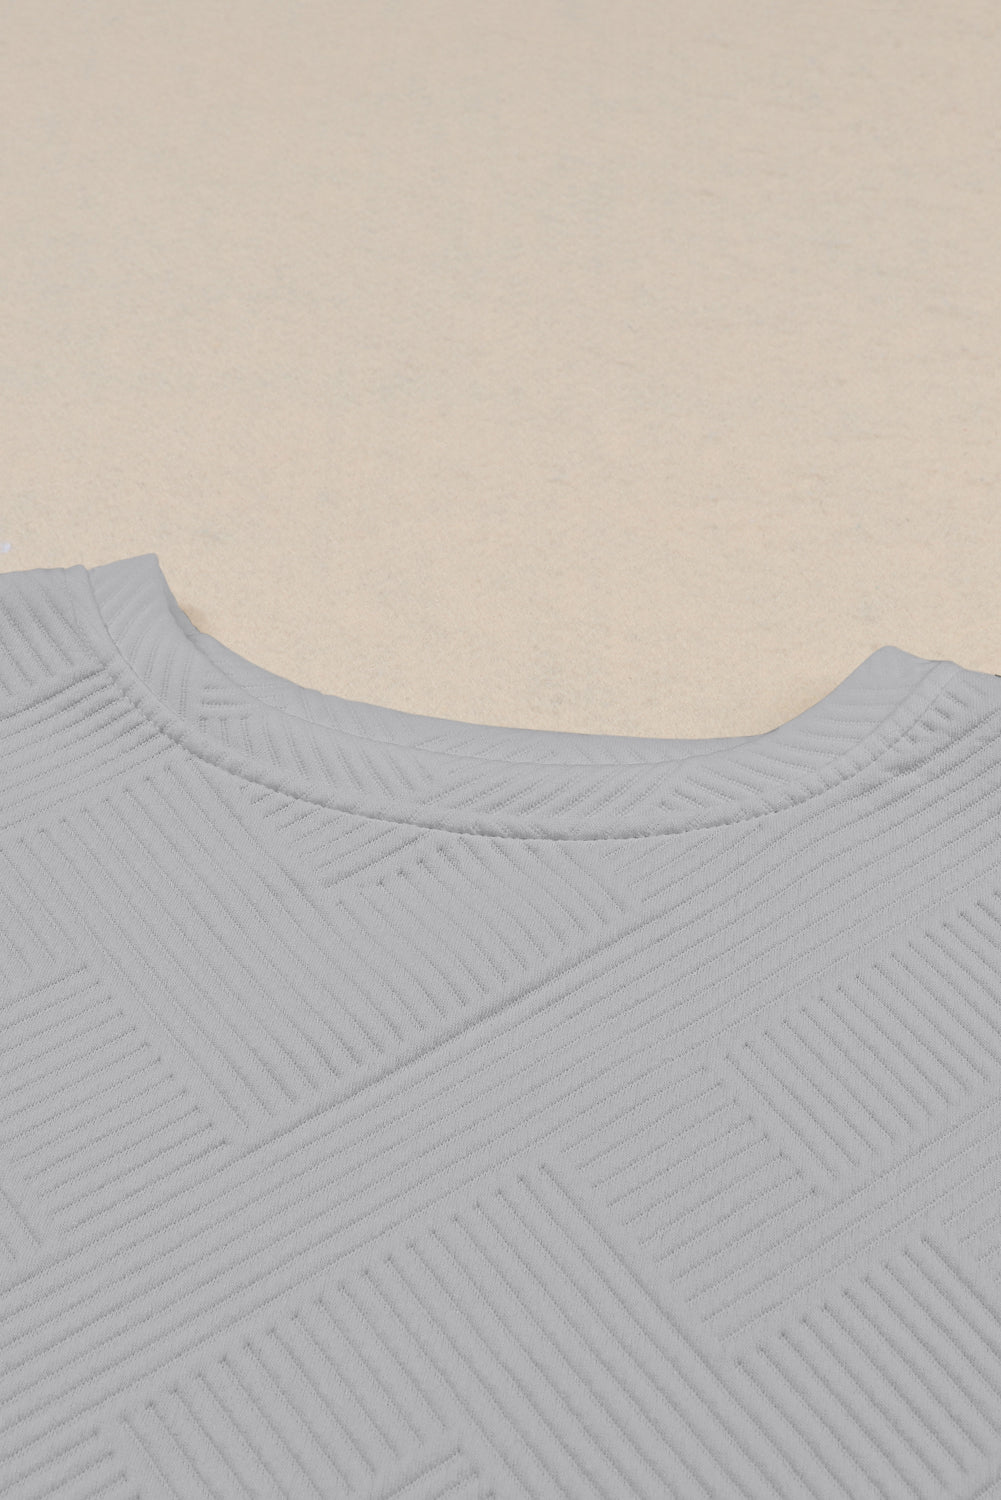 Stylish Gray Women's T-Shirt & Pants Set - Ultra Loose